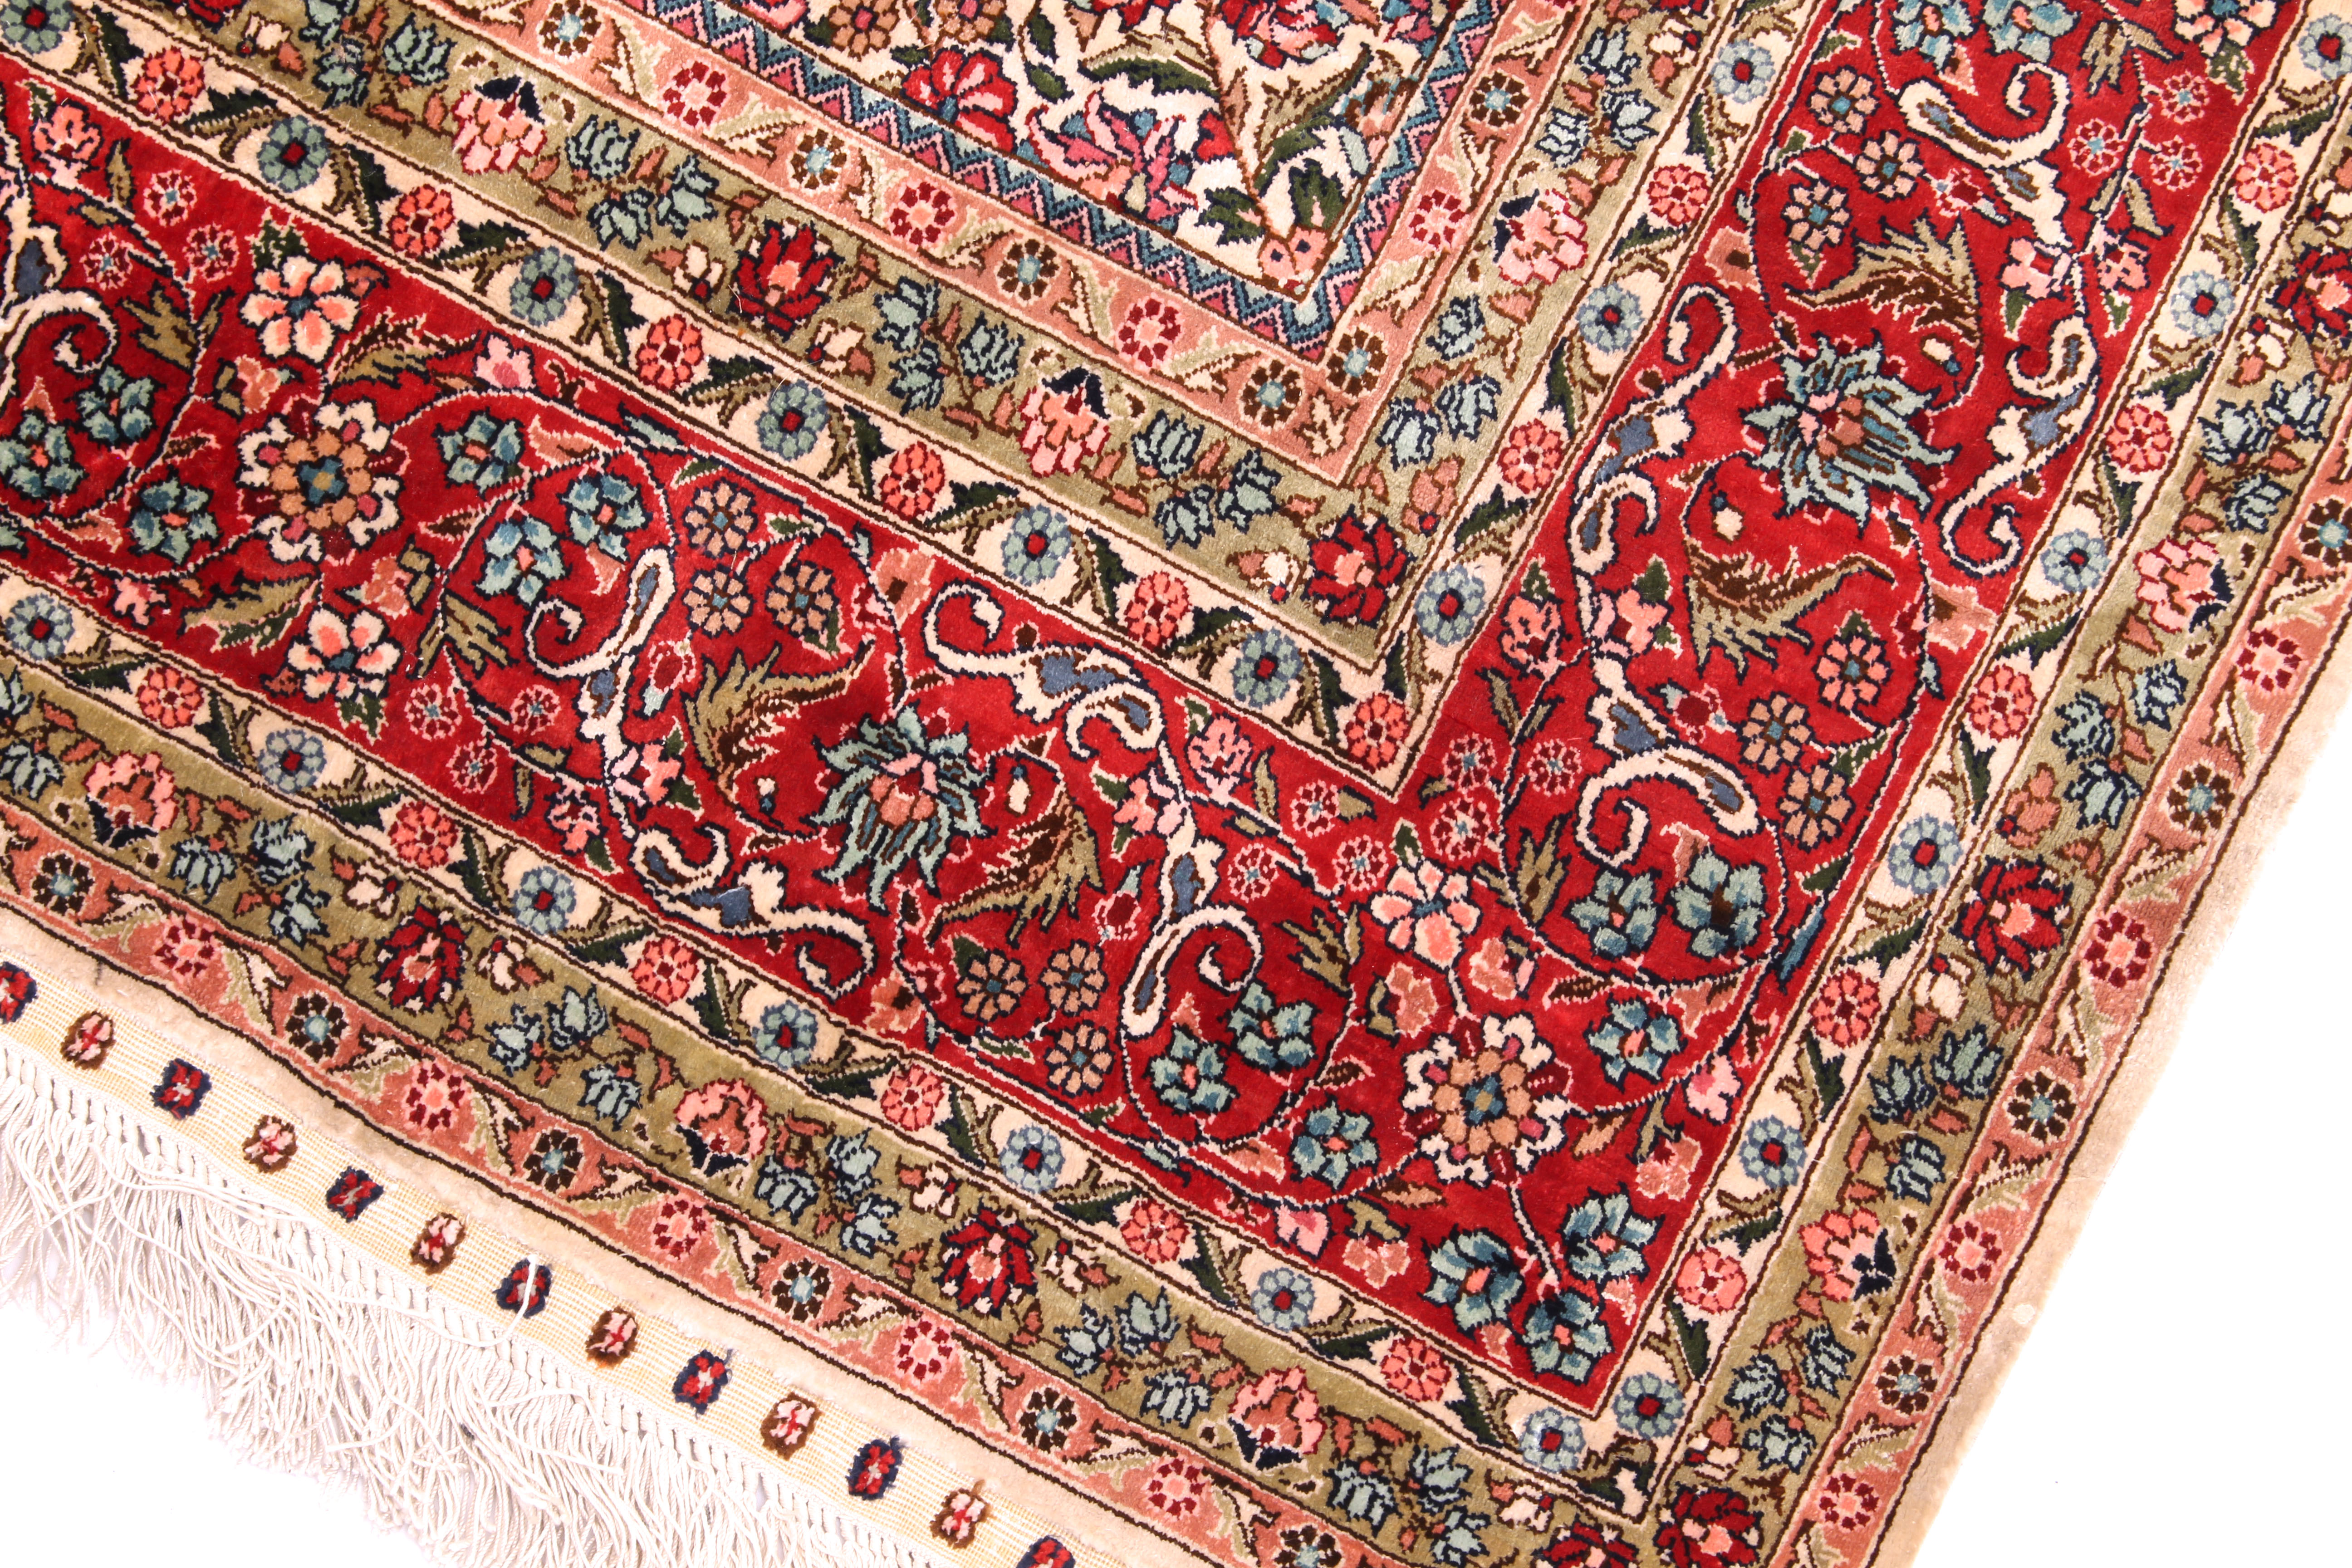 A silk rug, 208 (excluding fringe) x 139 cm - Image 4 of 6